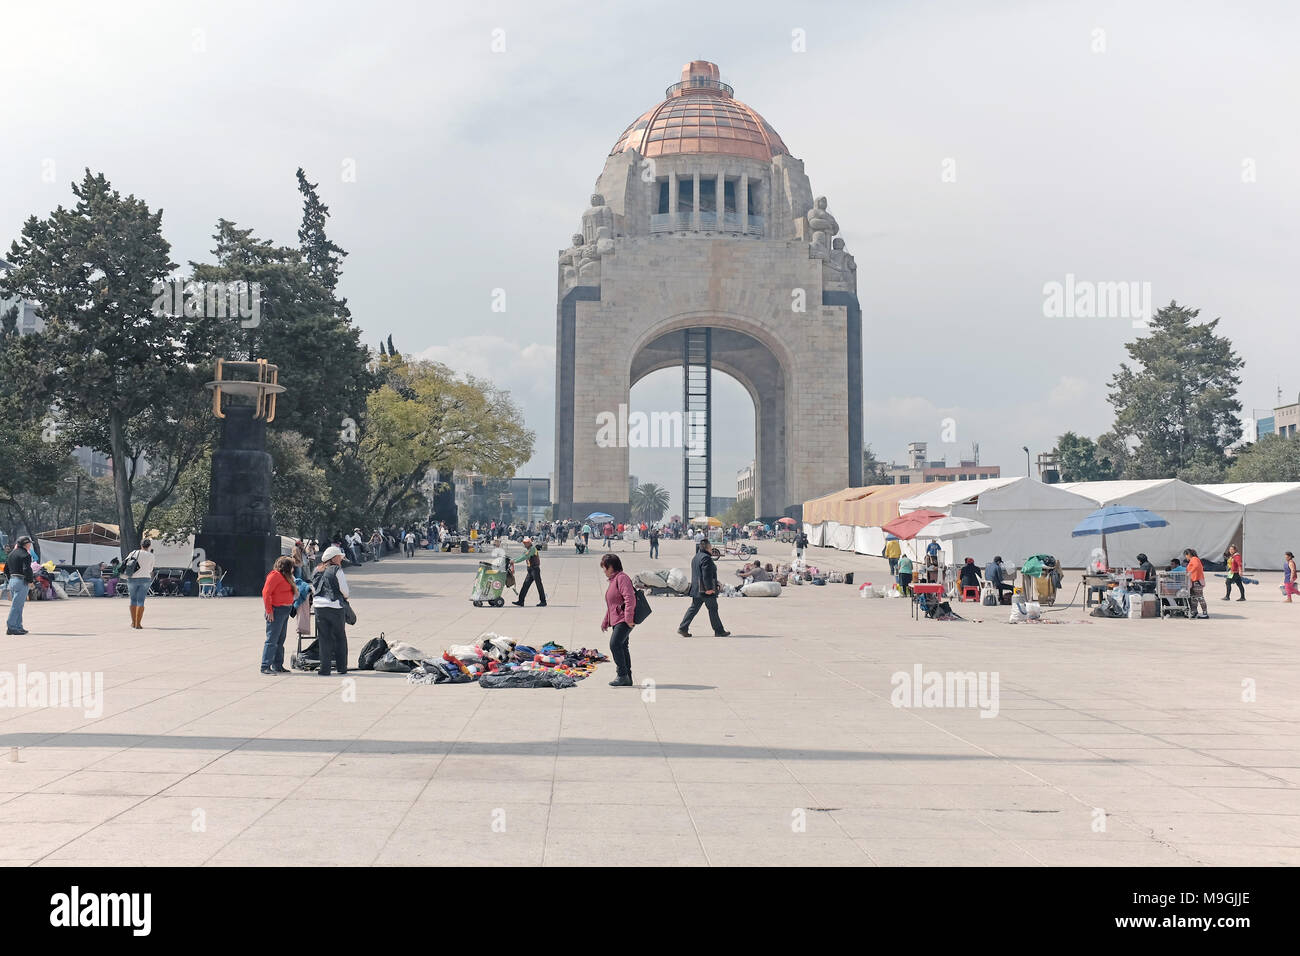 La Plaza de la République avec le Monument de la révolution est une région populaire pour protester contre des enjeux ayant une incidence sur le peuple mexicain. Banque D'Images